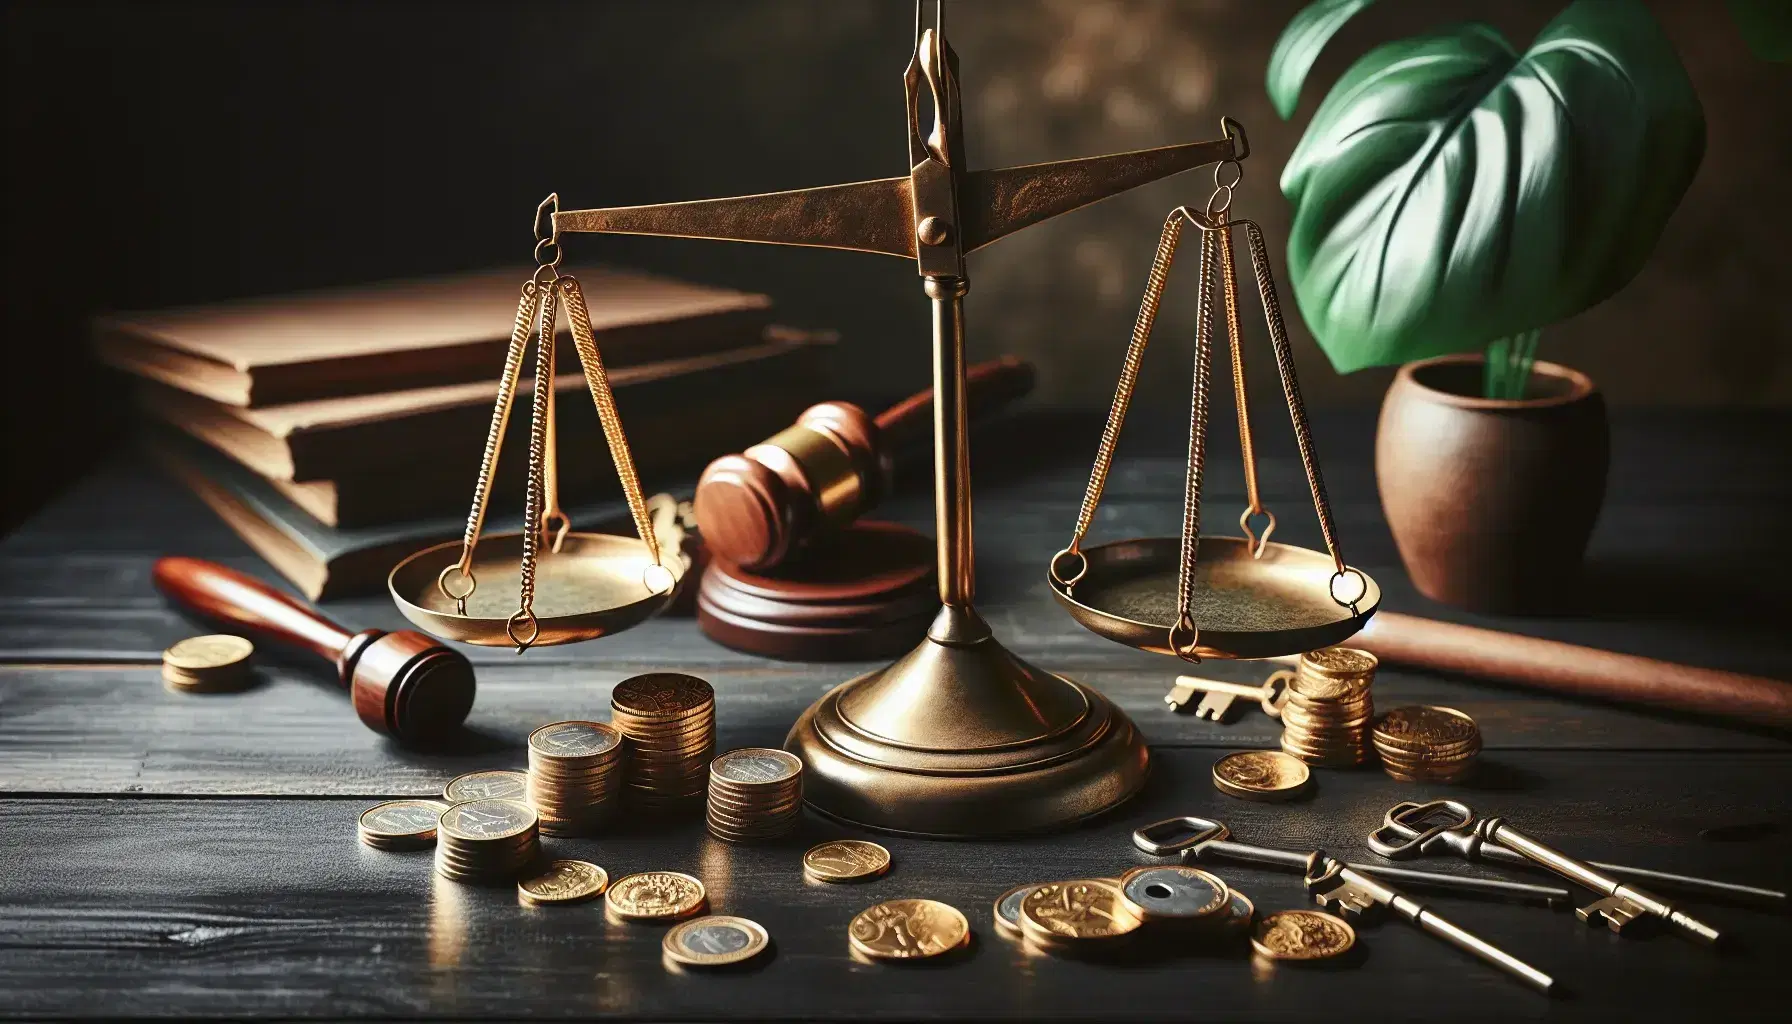 Balanza de justicia de bronce equilibrada en mesa de madera oscura, con monedas de oro a la izquierda y llaves metálicas a la derecha, planta verde al fondo.